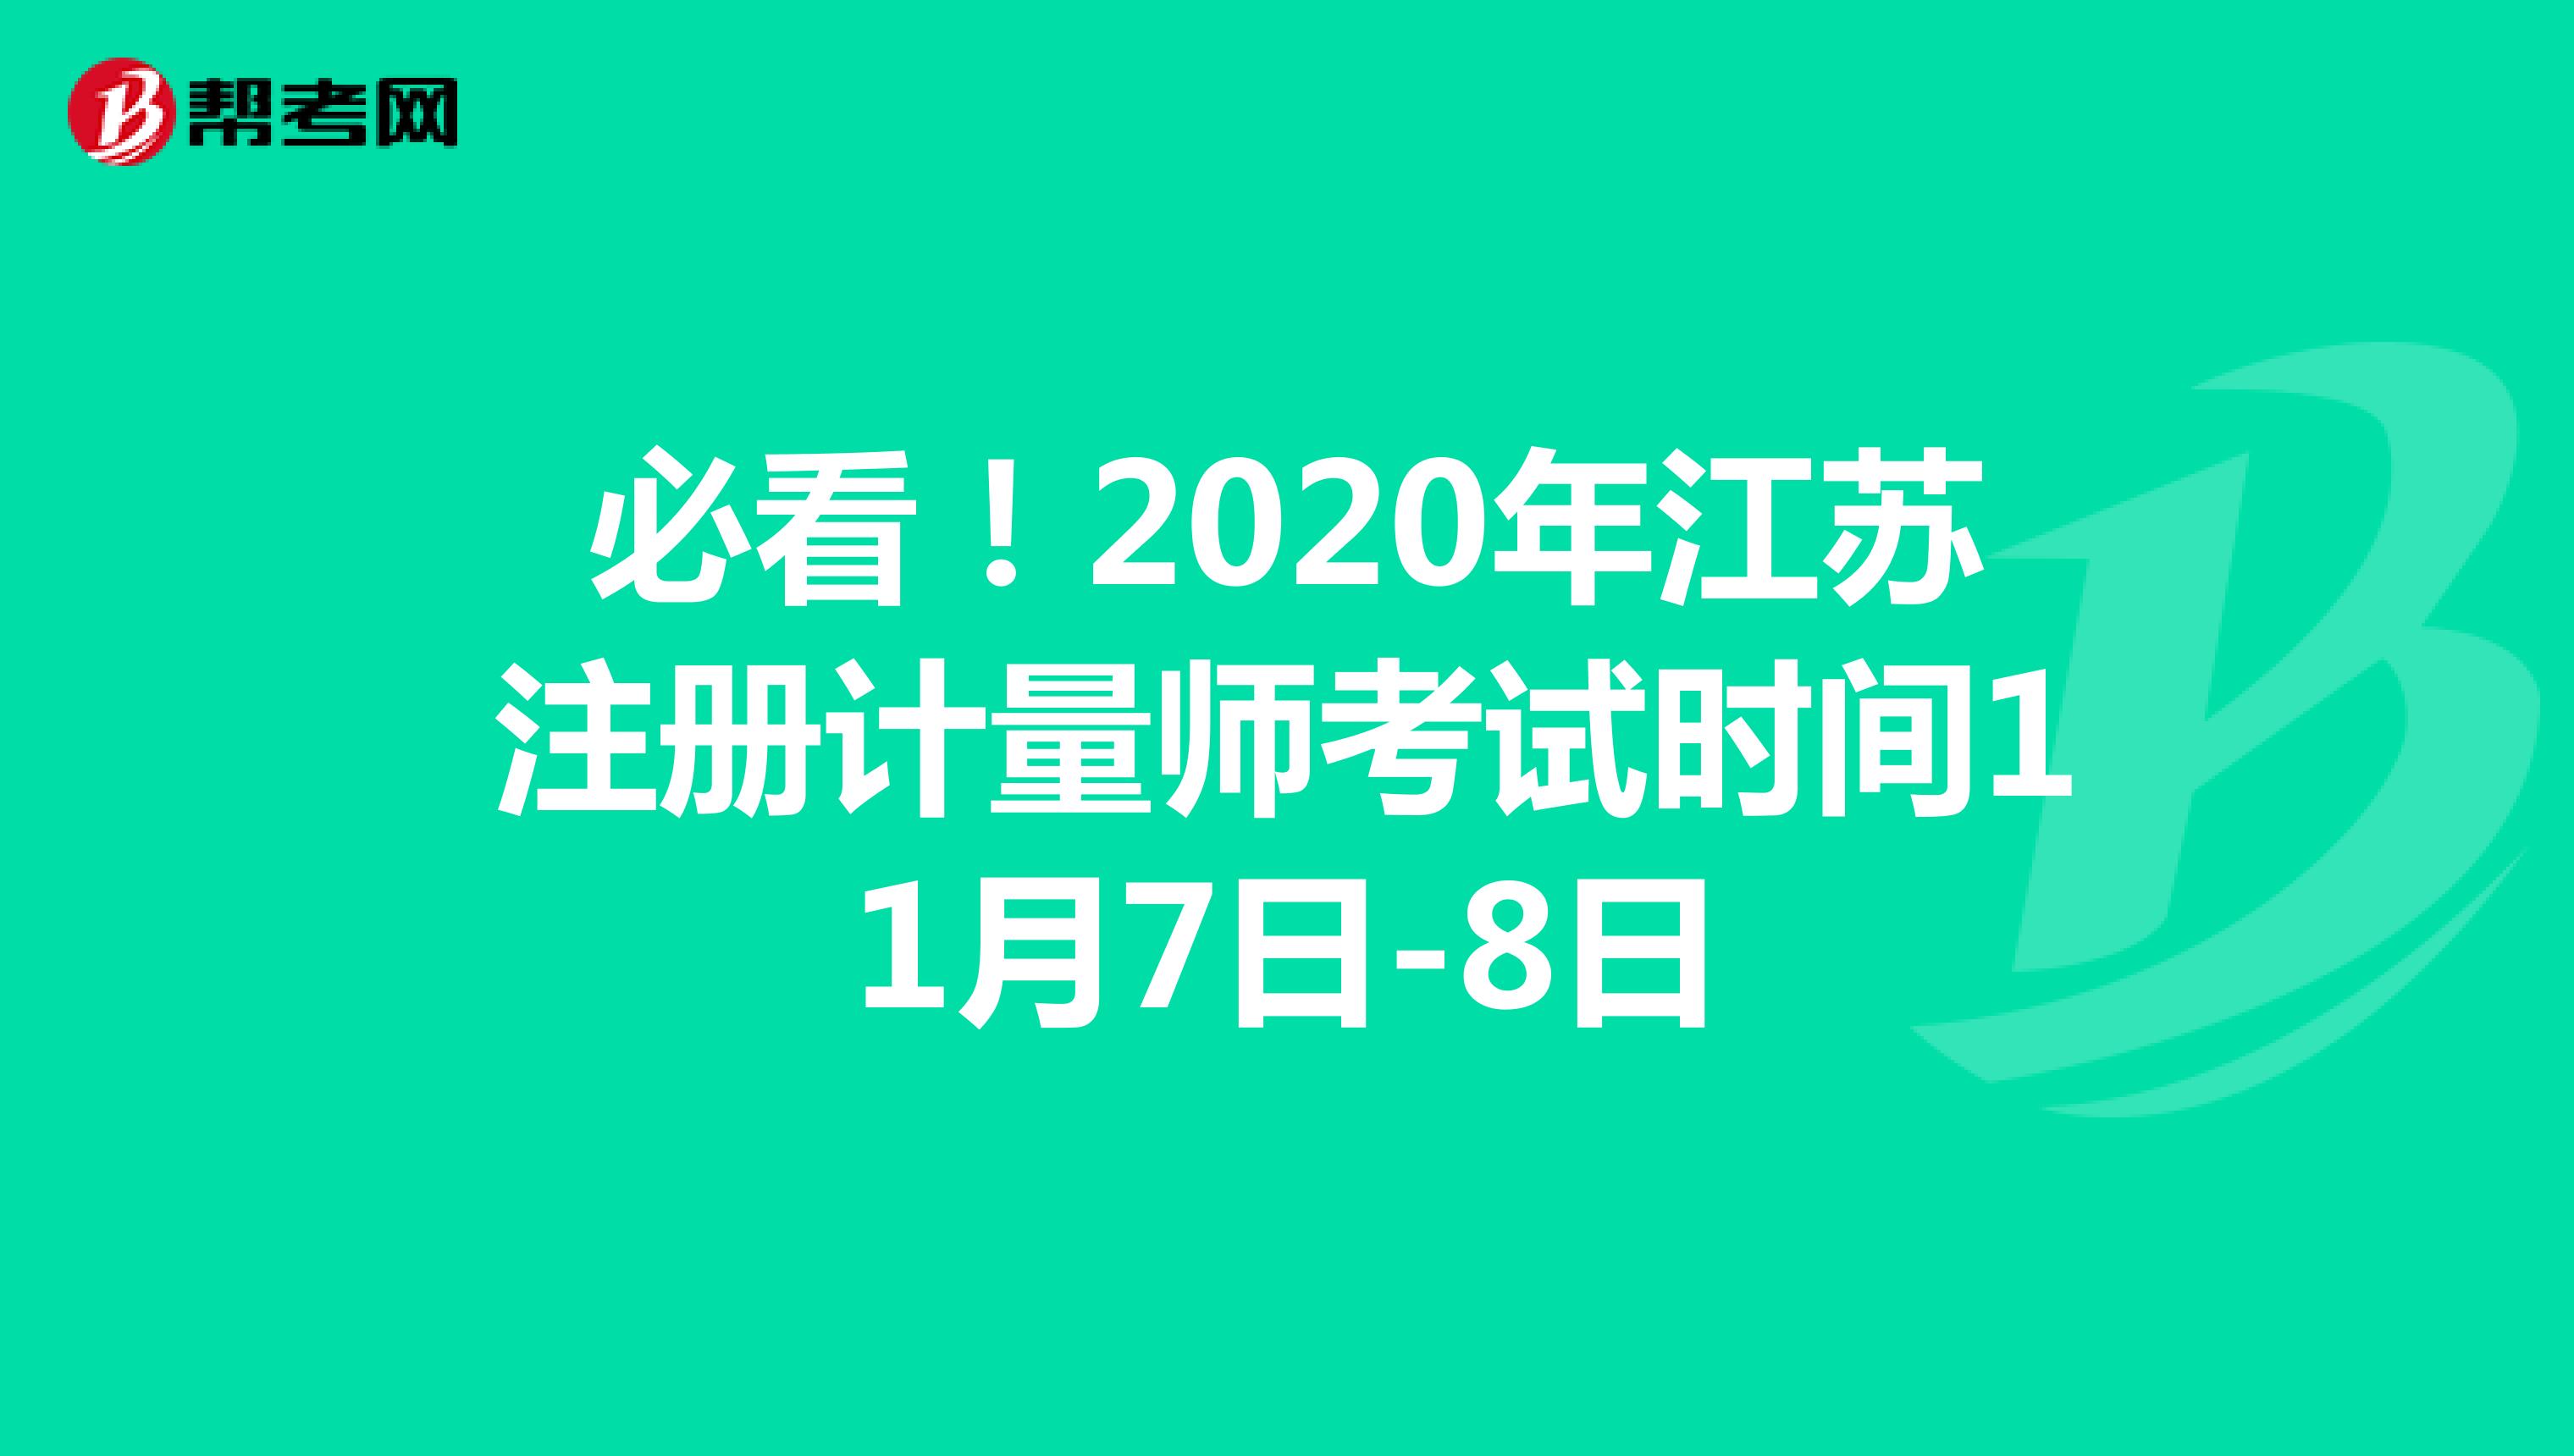 必看！2020年江苏注册计量师考试时间11月7日-8日